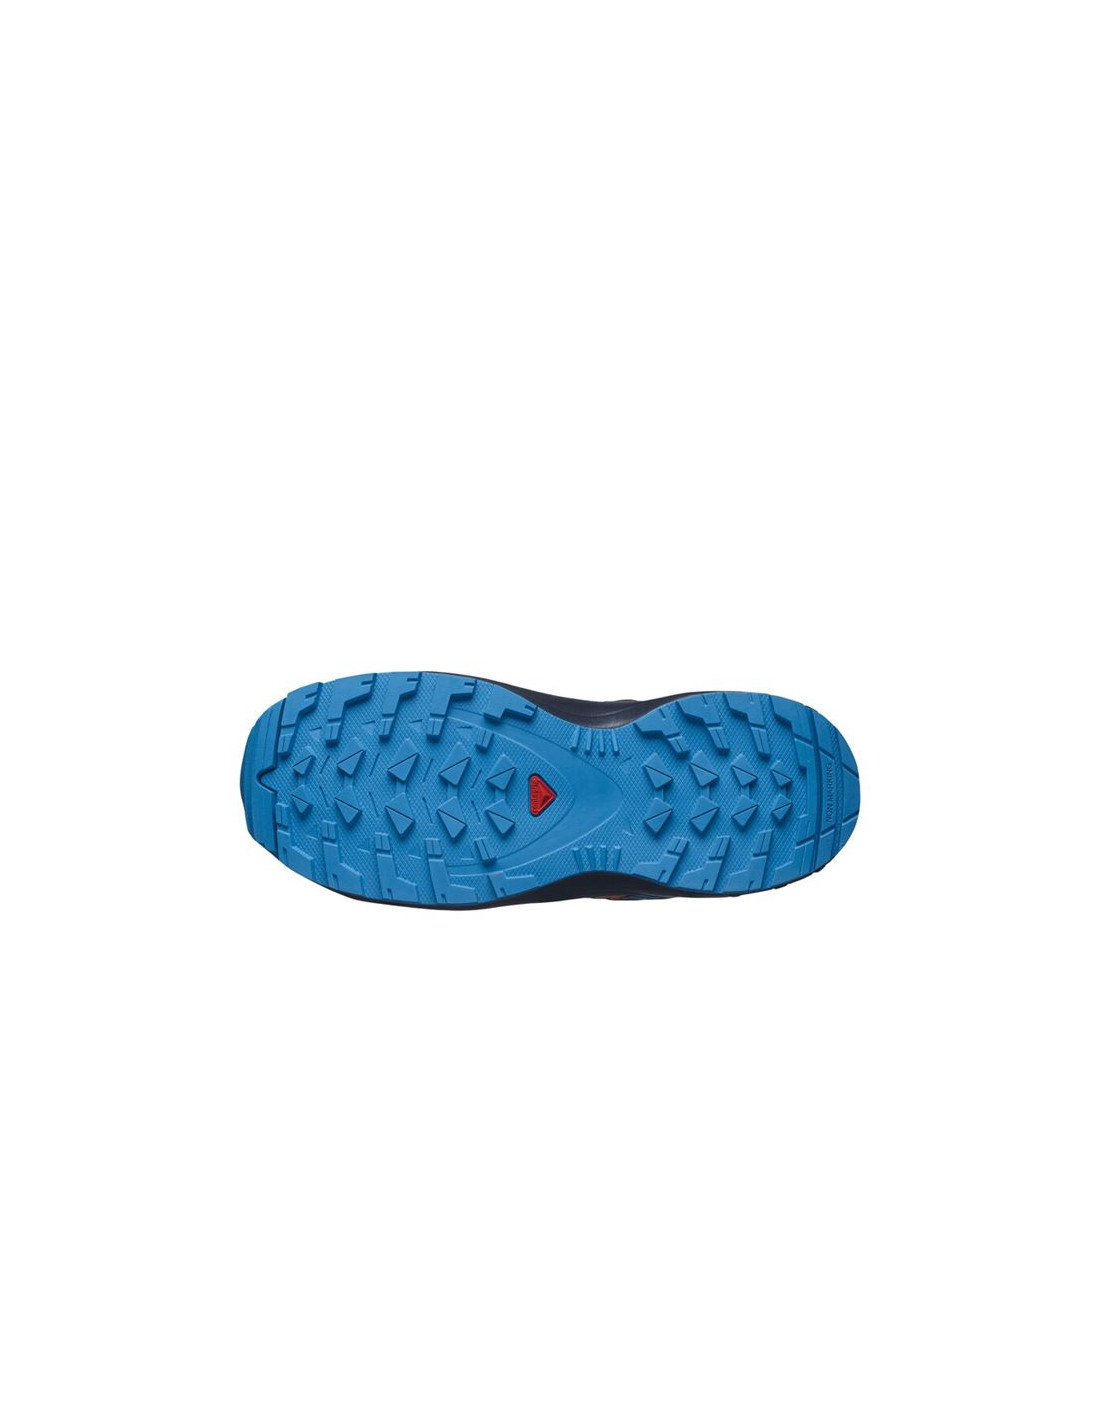 Zapatillas Salomon Xa Pro V8 J Niños Azul. Oferta y Comprar